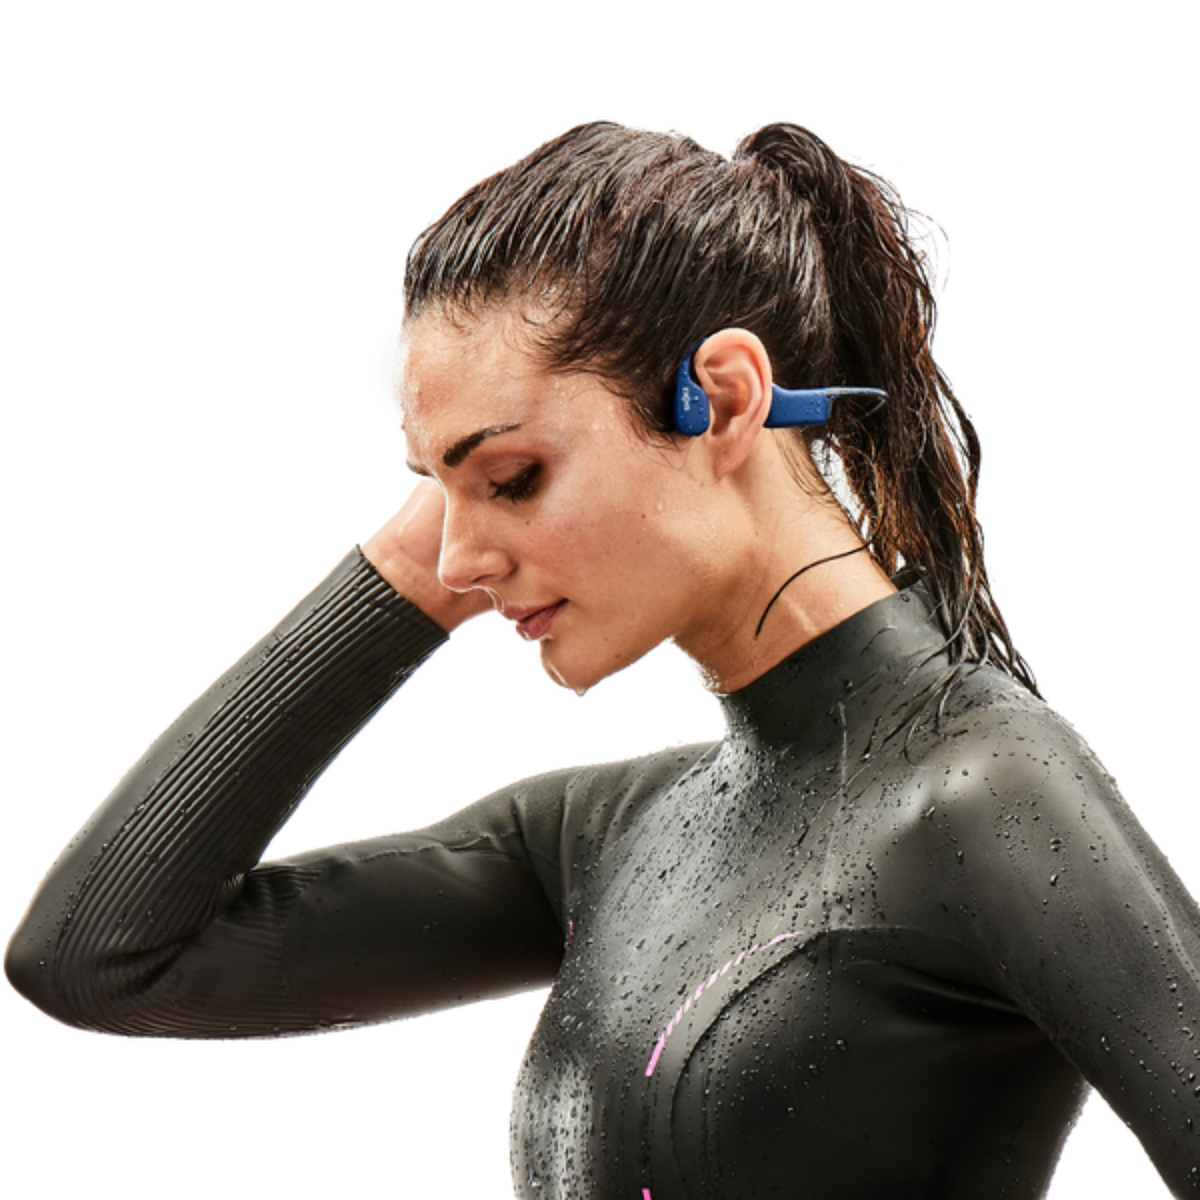 شوكز أوبن سويم بون كوندكشن سماعات رأس Mp3 للسباحة بتصميم أذن مفتوحة، أزرق، OPENSWIM BLU